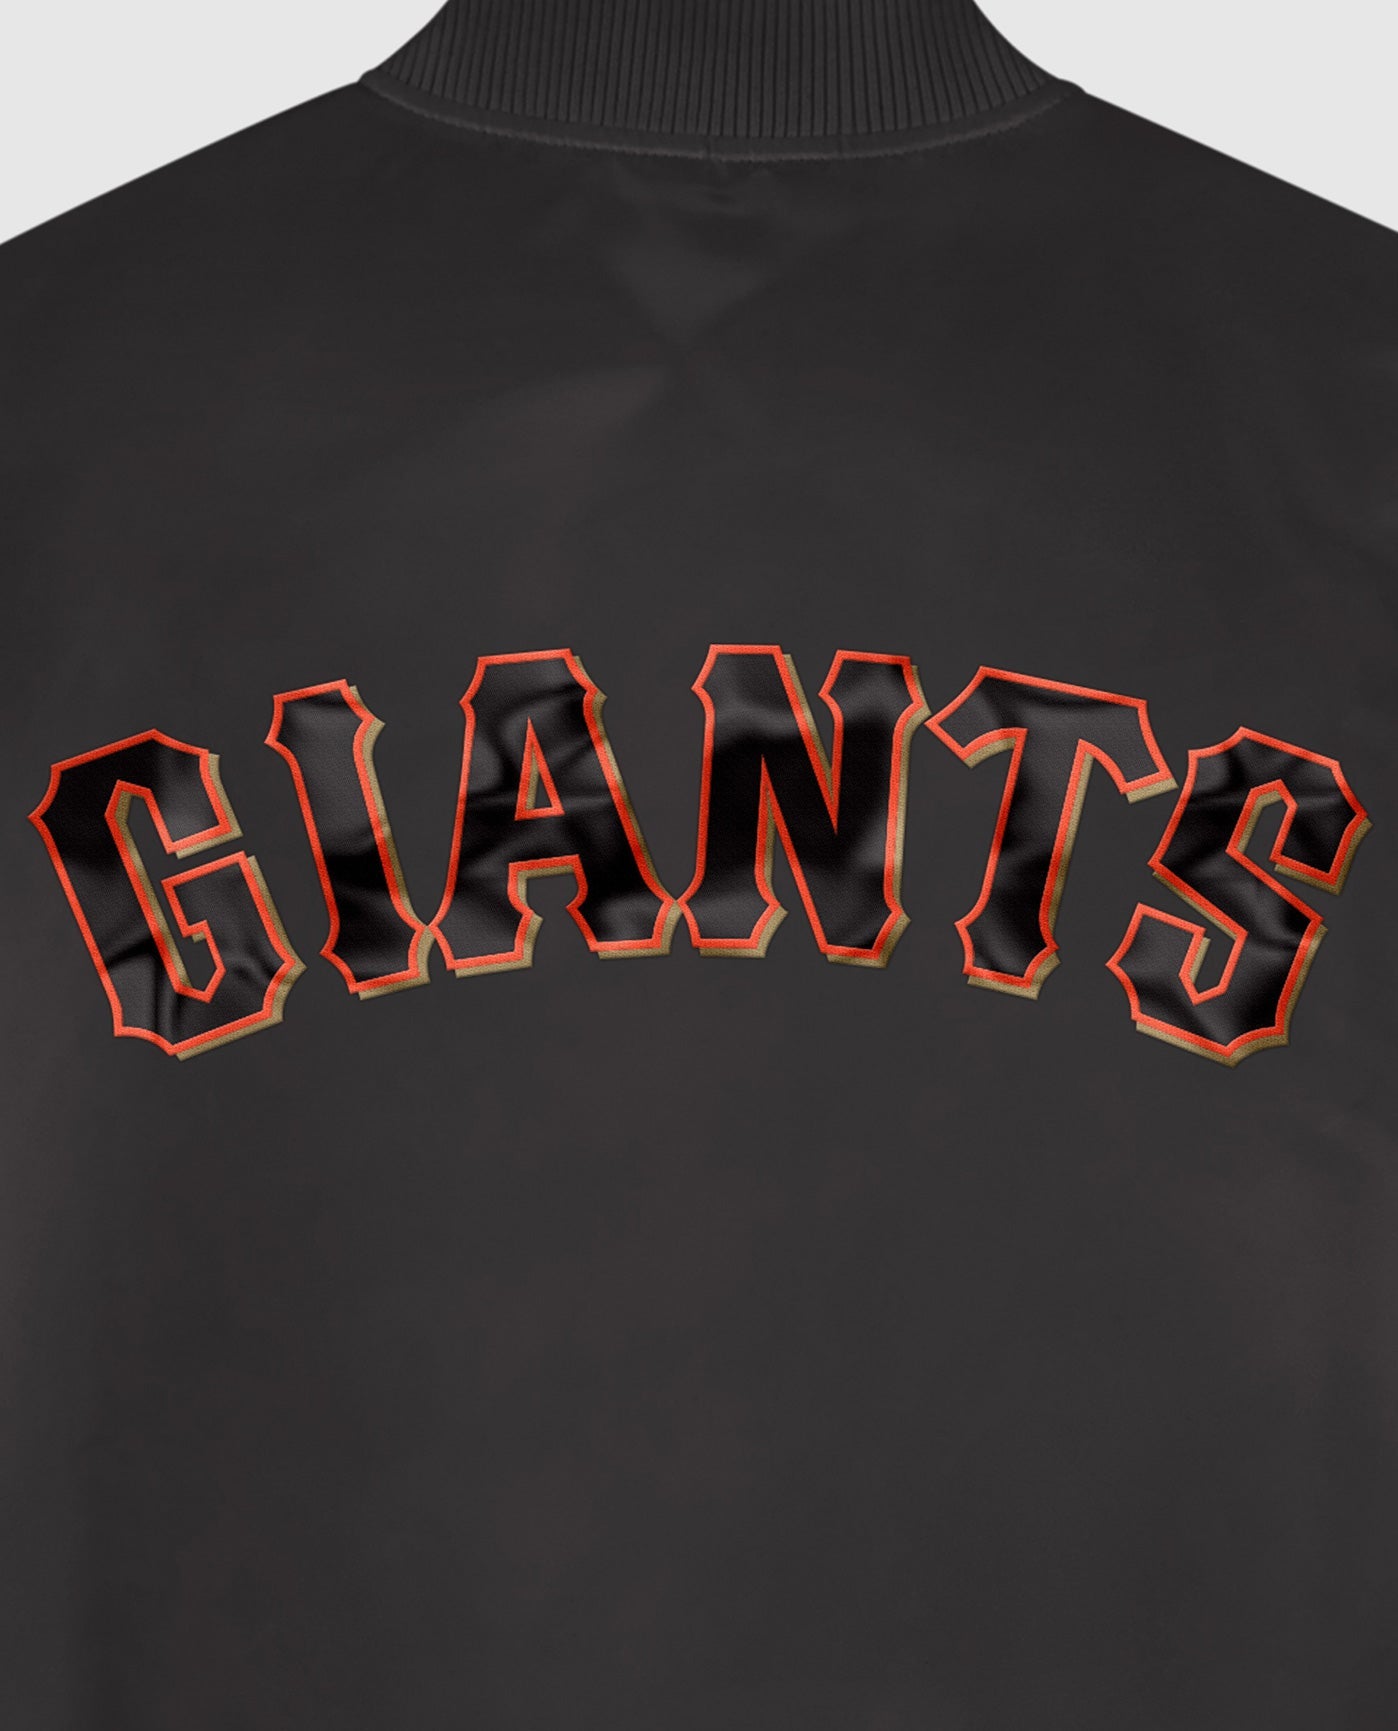 San Francisco Giants Team Name Twill Applique | Black